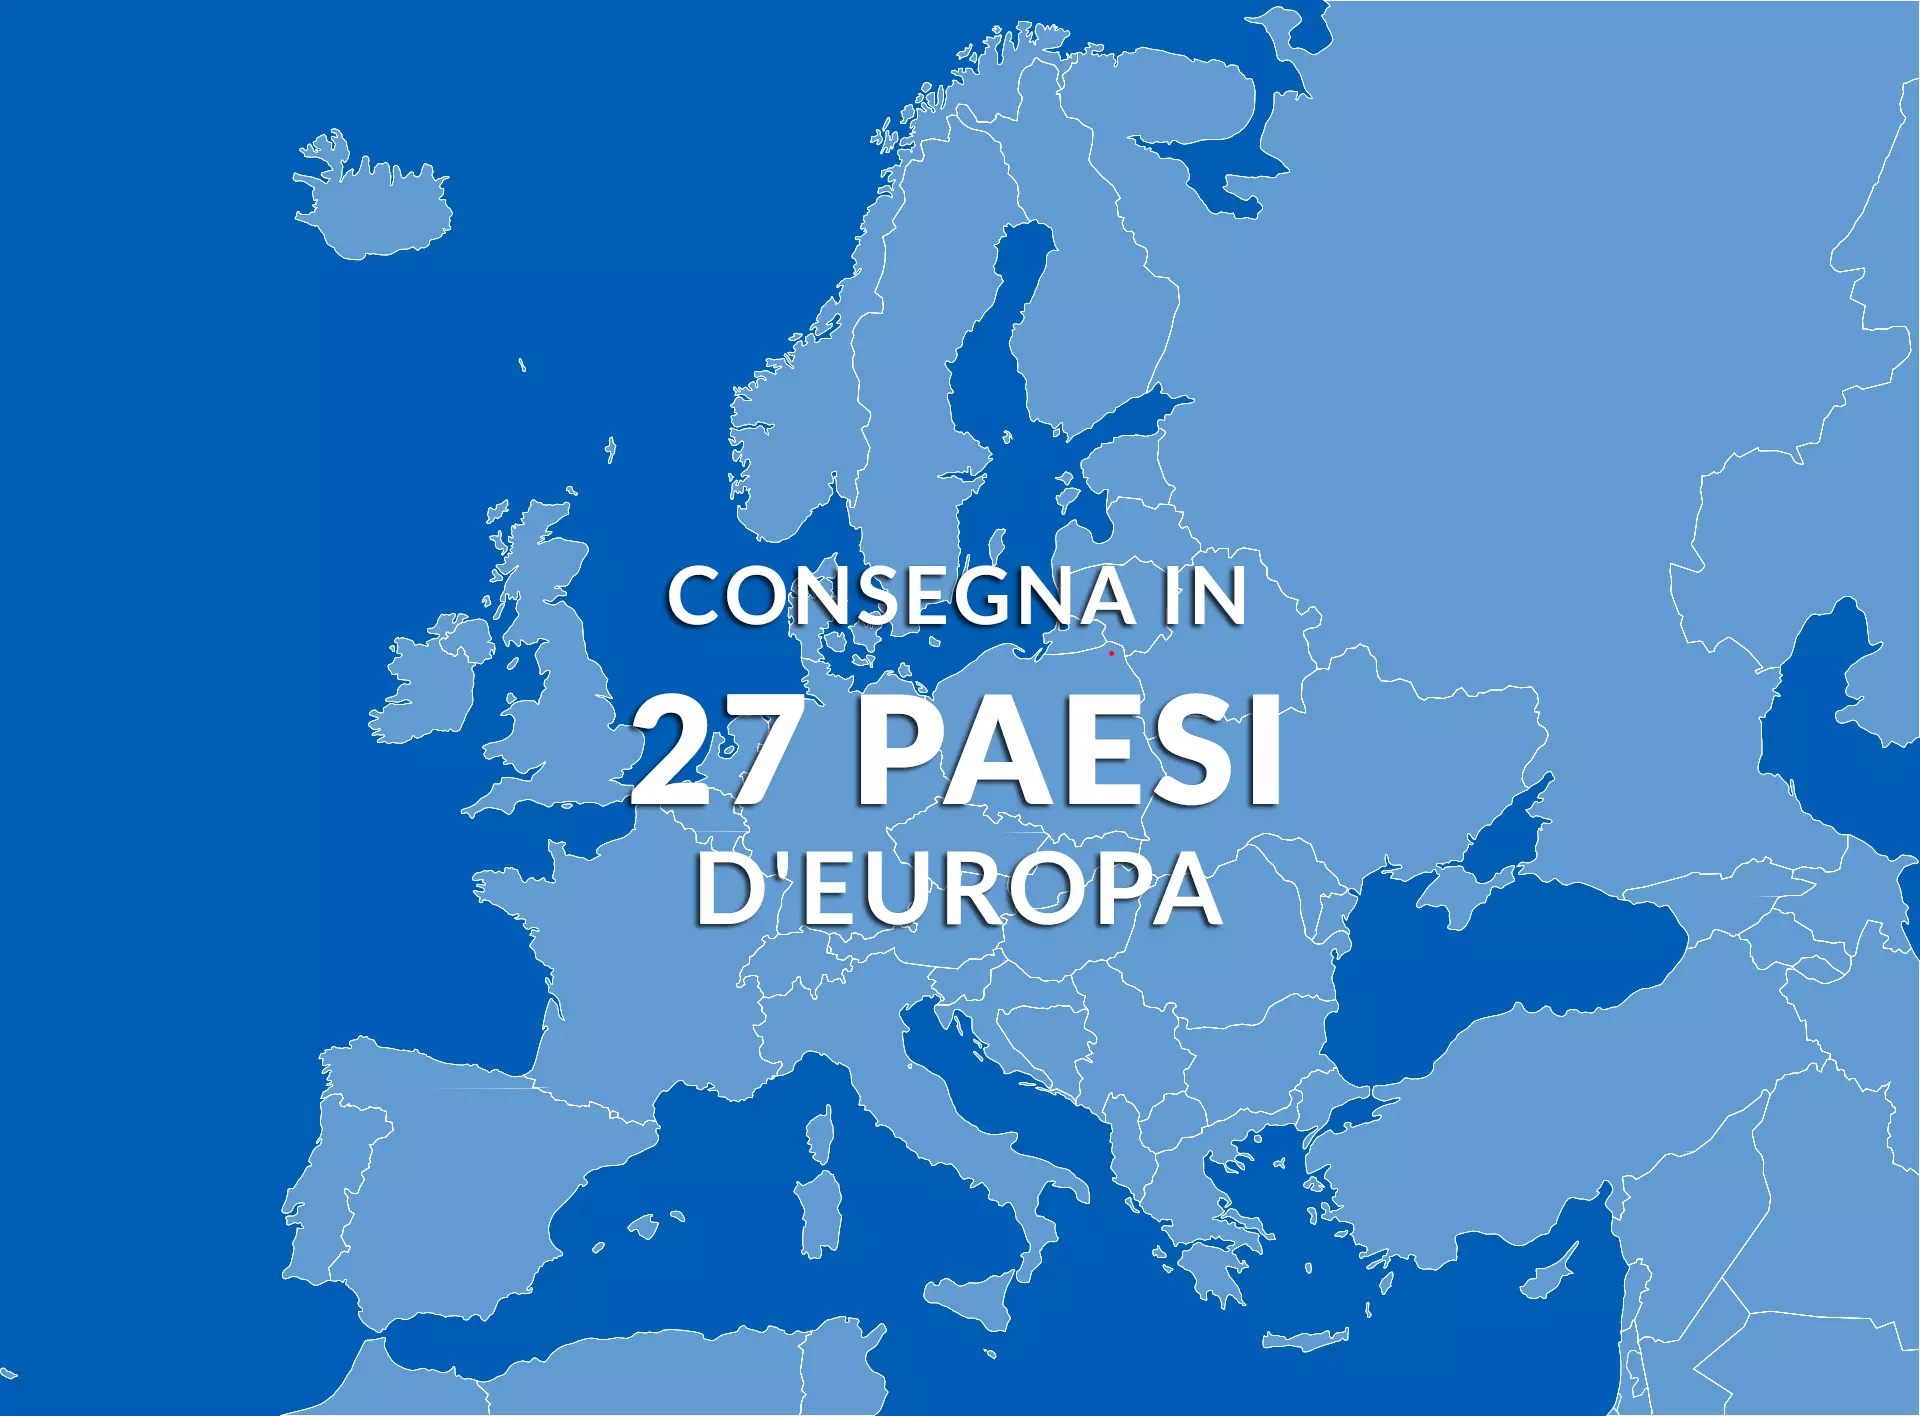 Consegniamo cerchi in 27 paesi europei